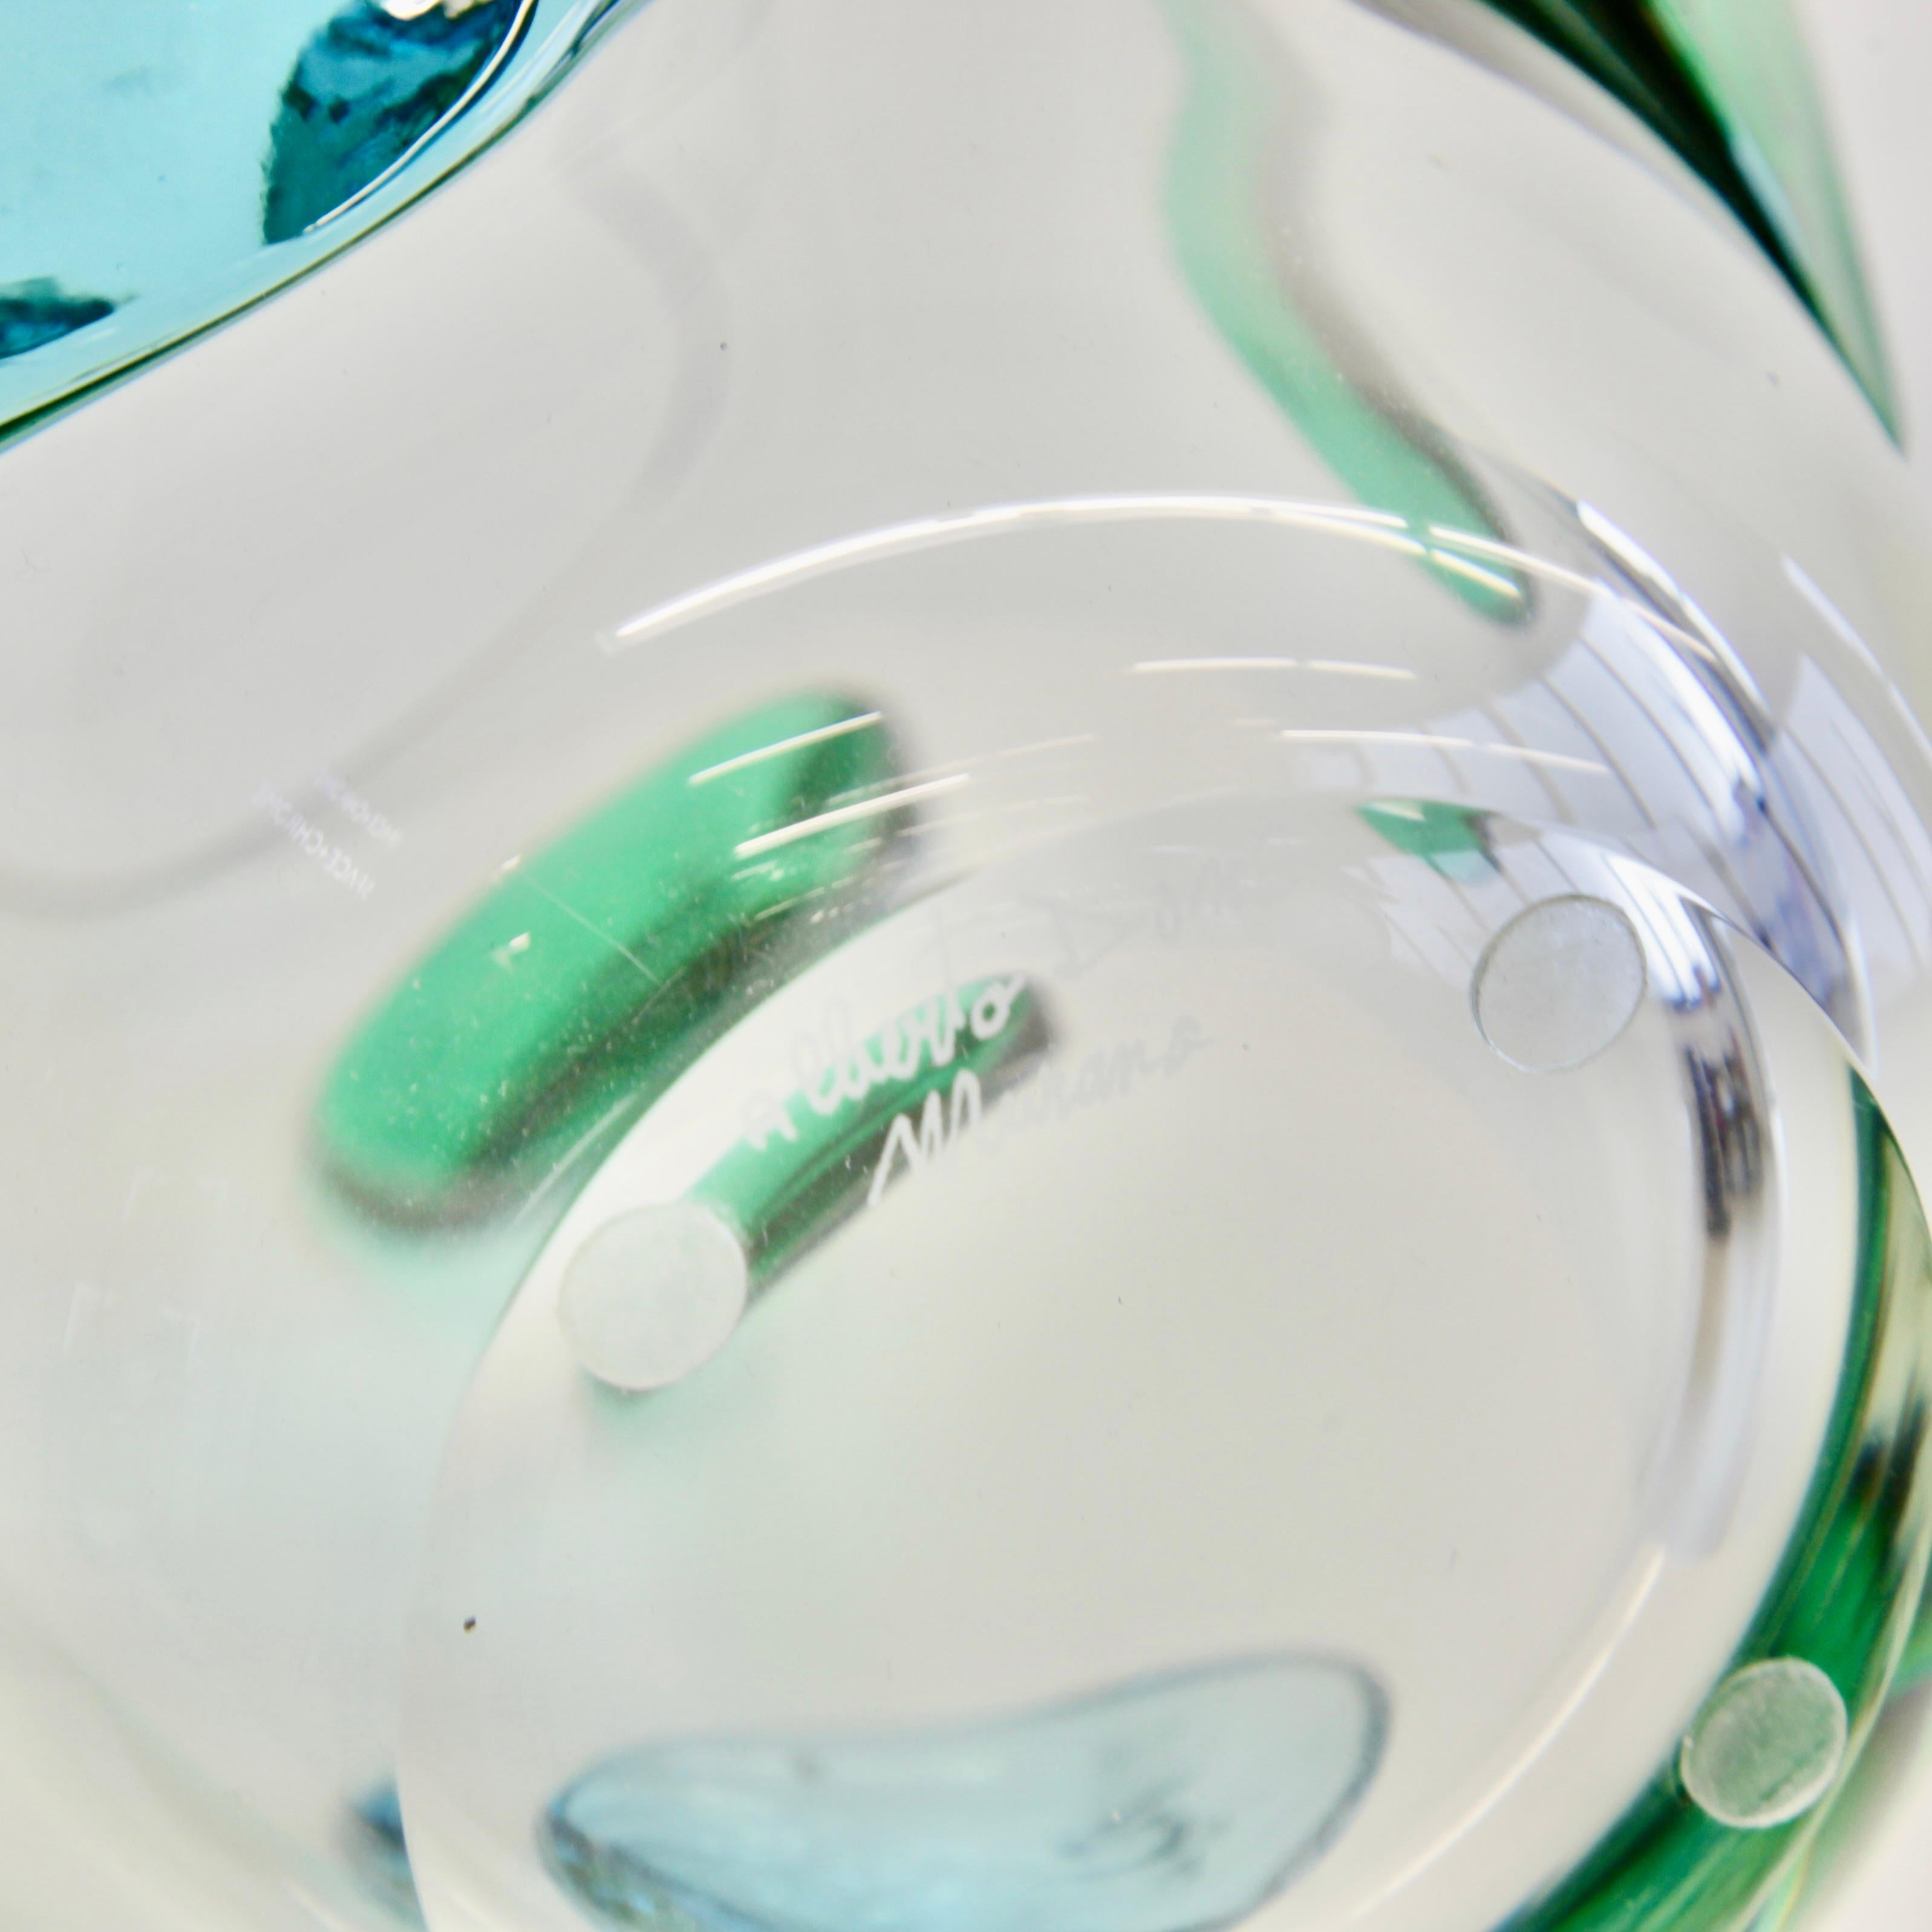 Grand vase en verre soufflé à la bouche, Italie, Murano.

Vase en verre de Murano soufflé à la main avec des ornements en verre vert et bleu-vert, gravé avec la signature sur la base. Pièce décorative, fabriquée sur l'île de Murano. Signé.

Soufflé